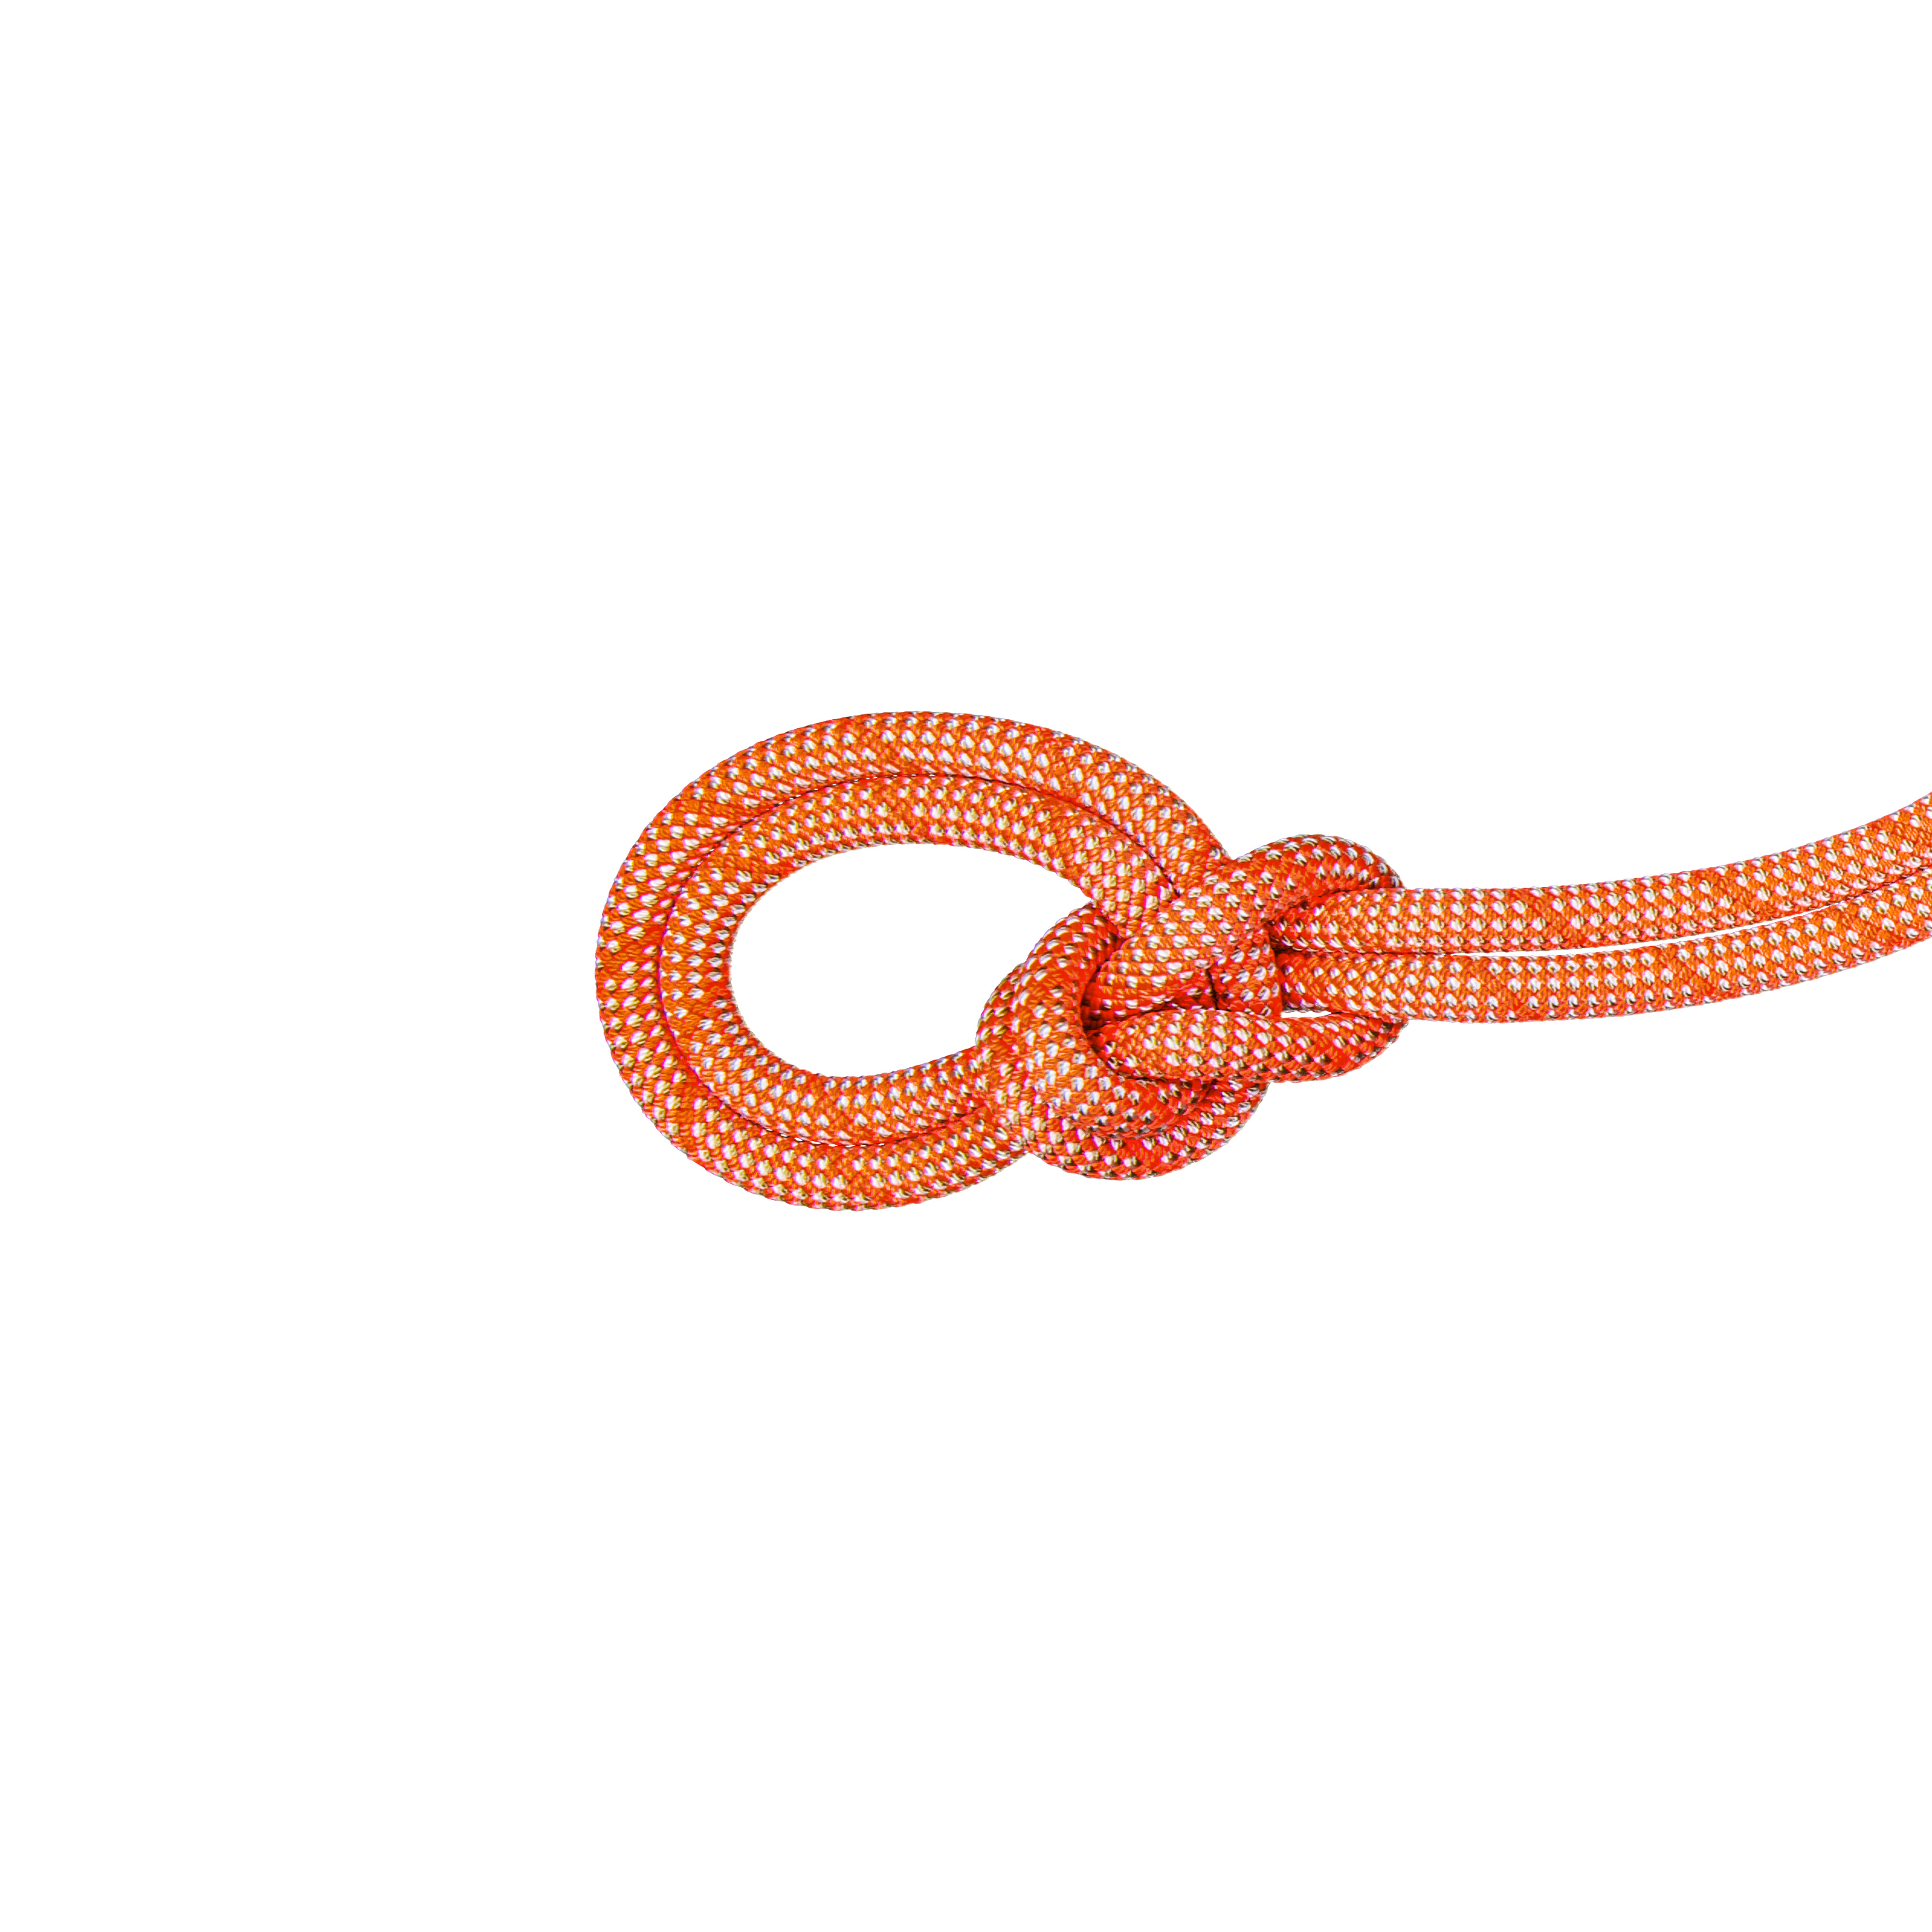 9.8 Crag Classic Rope Classic Standard orange-white